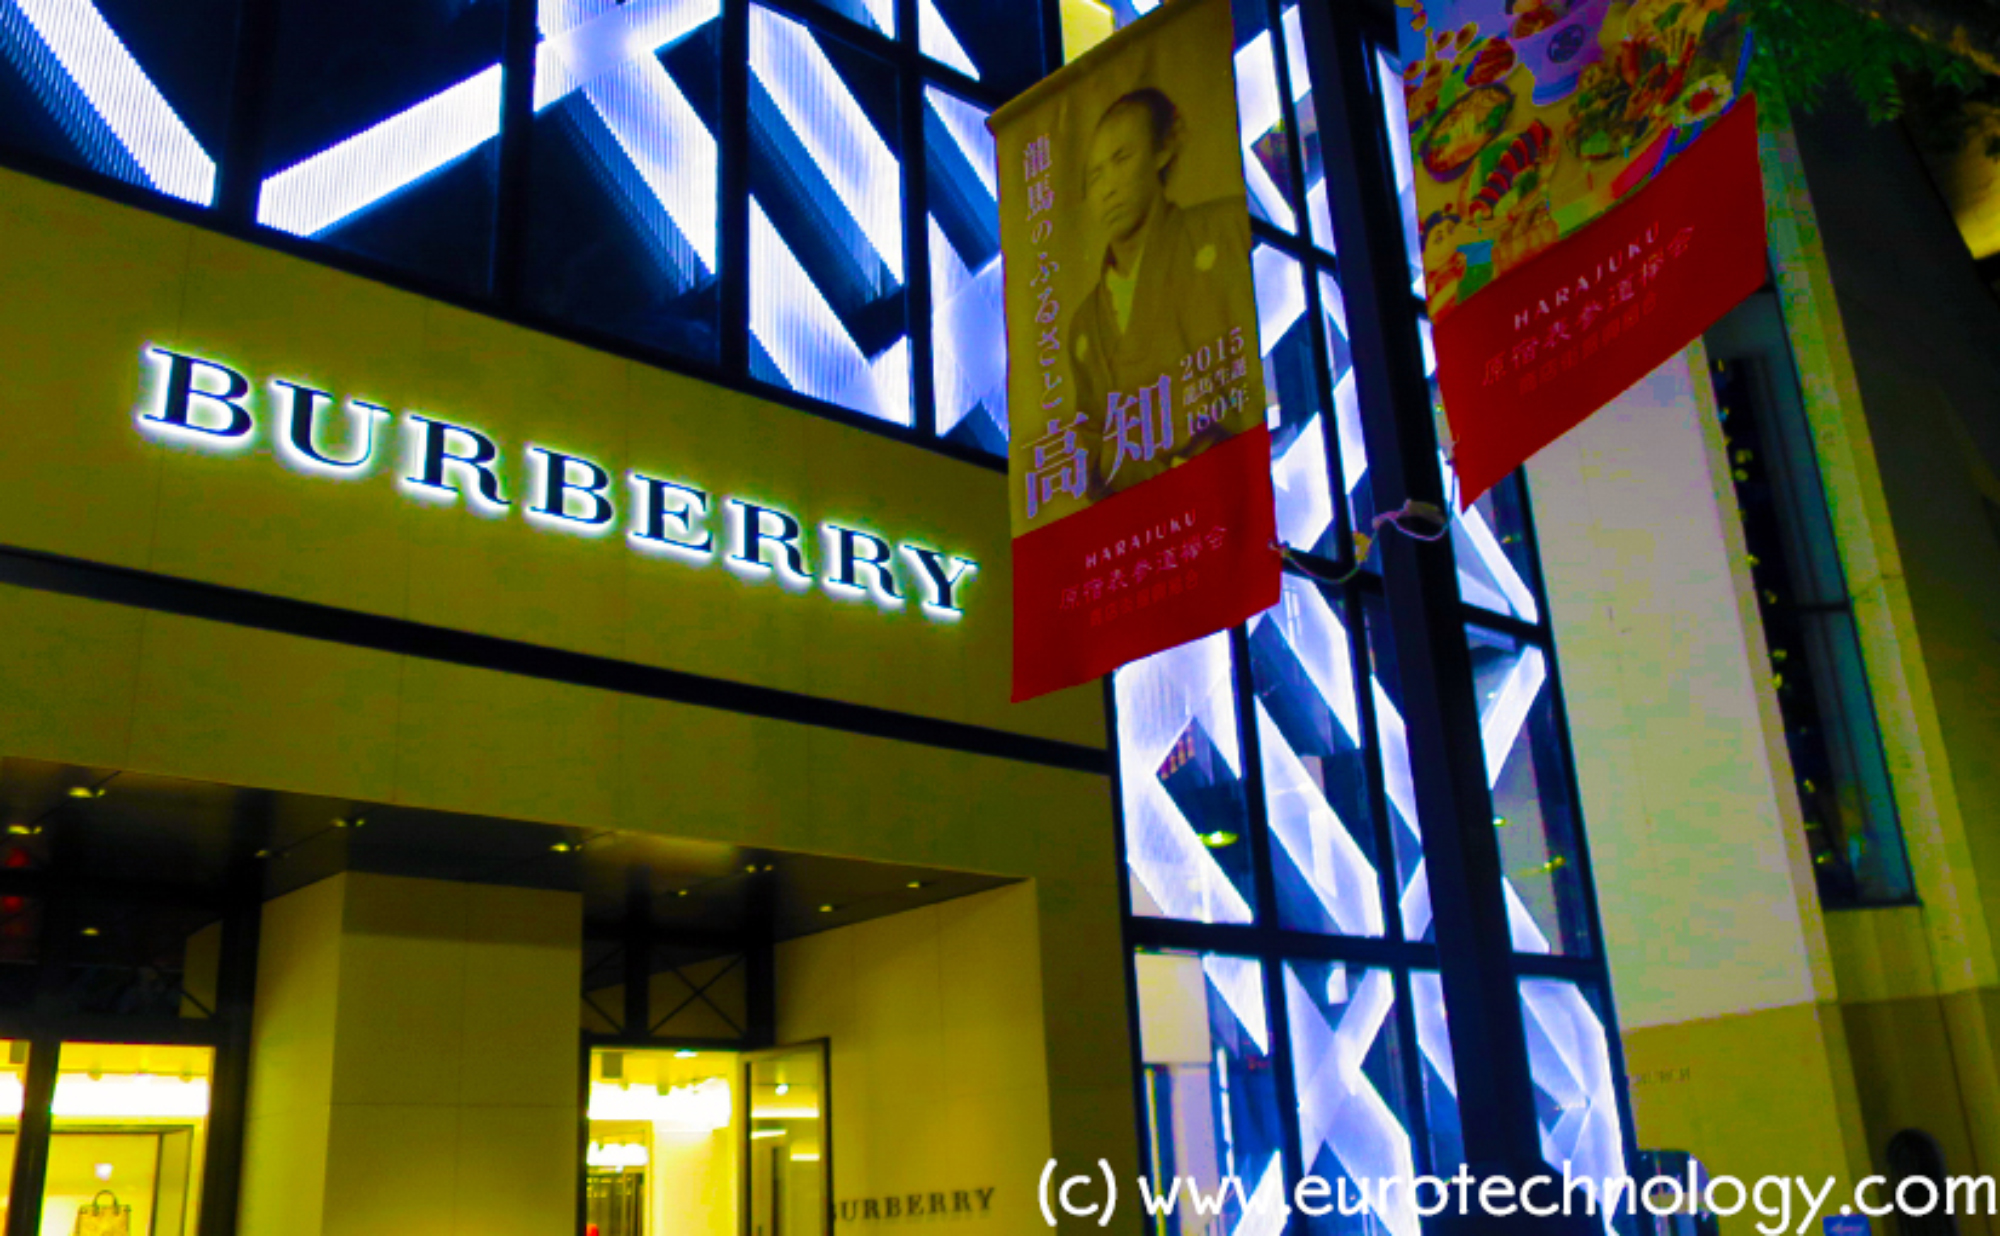 Burberry Omotesando Tokyo (c) eurotechnology.com